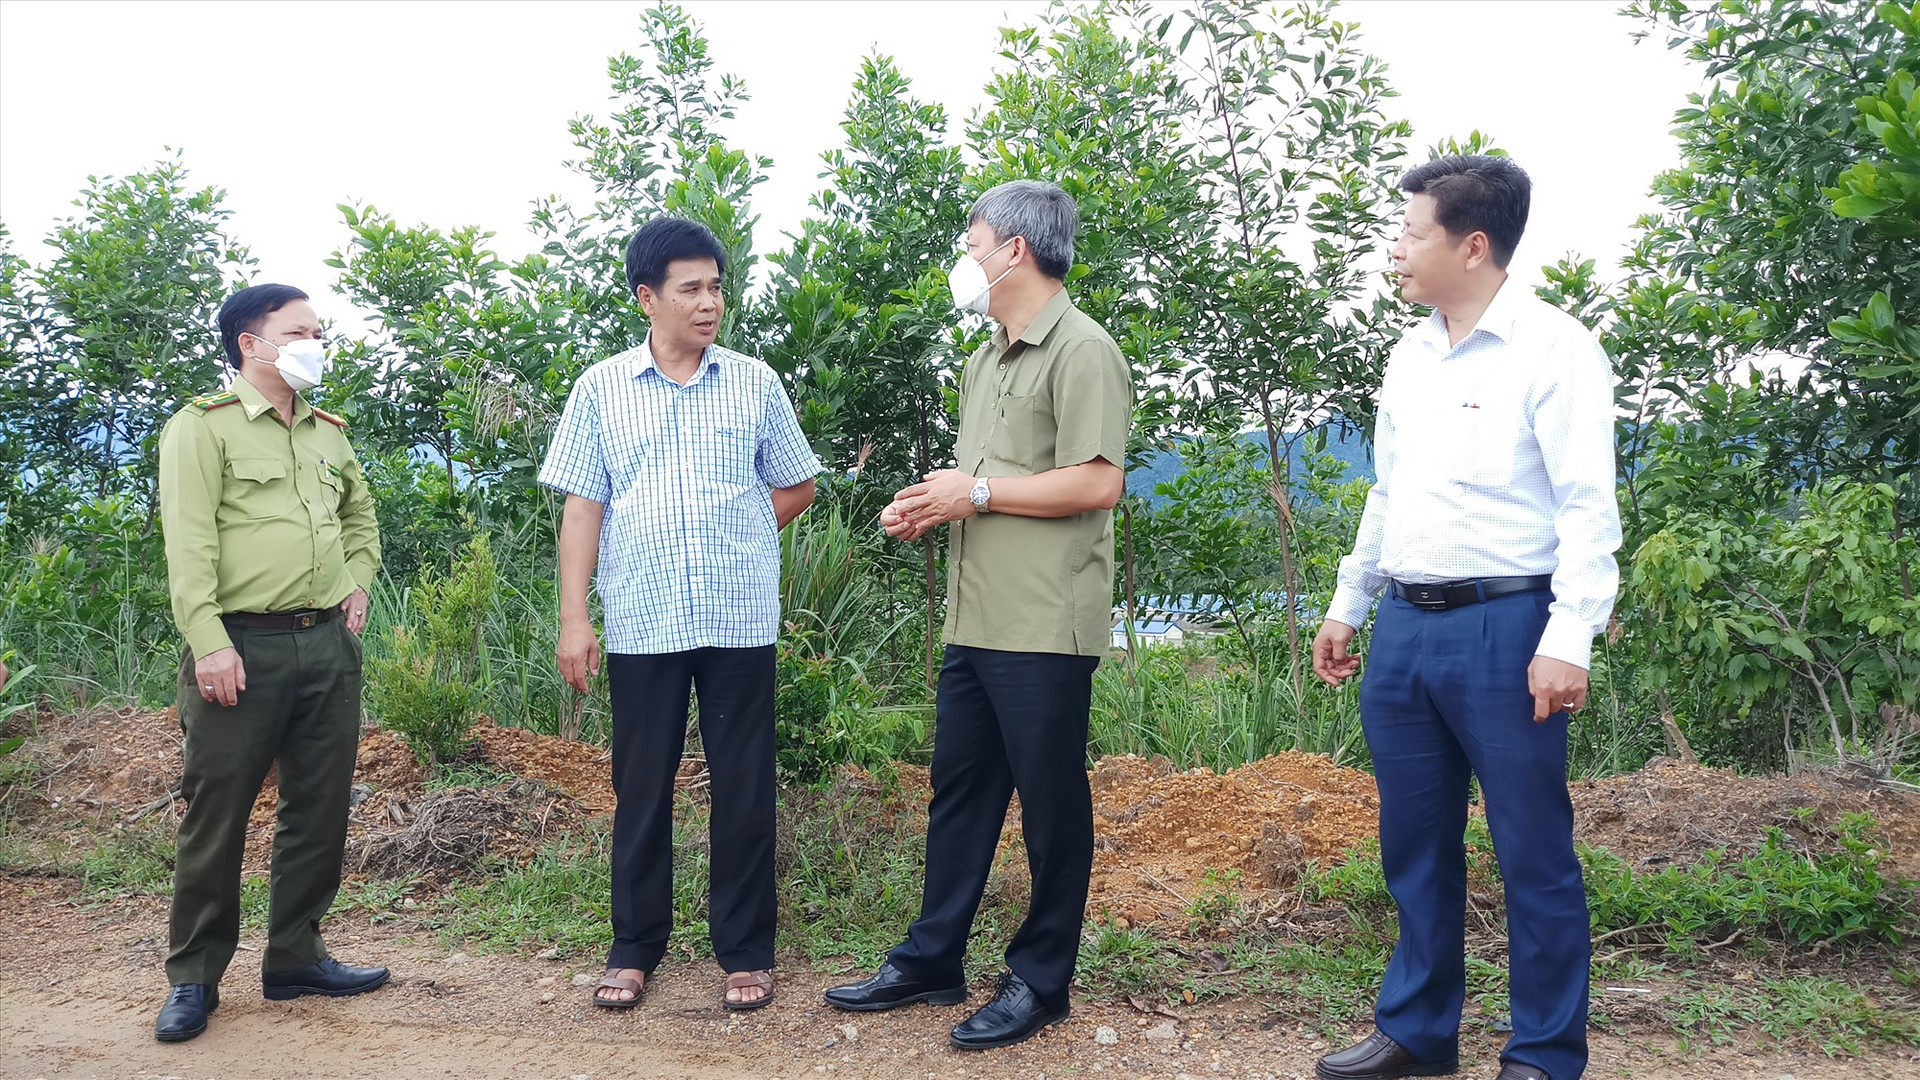 Kiểm tra đất lâm nghiệp trồng cao su sau thời gian bỏ hoang đã bị người dân lấn chiếm, Phó Chủ tịch UBND tỉnh Hồ Quang Bửu yêu cầu địa phương cần có phương án giải quyết cụ thể theo quy định của pháp luật. Ảnh: A.N